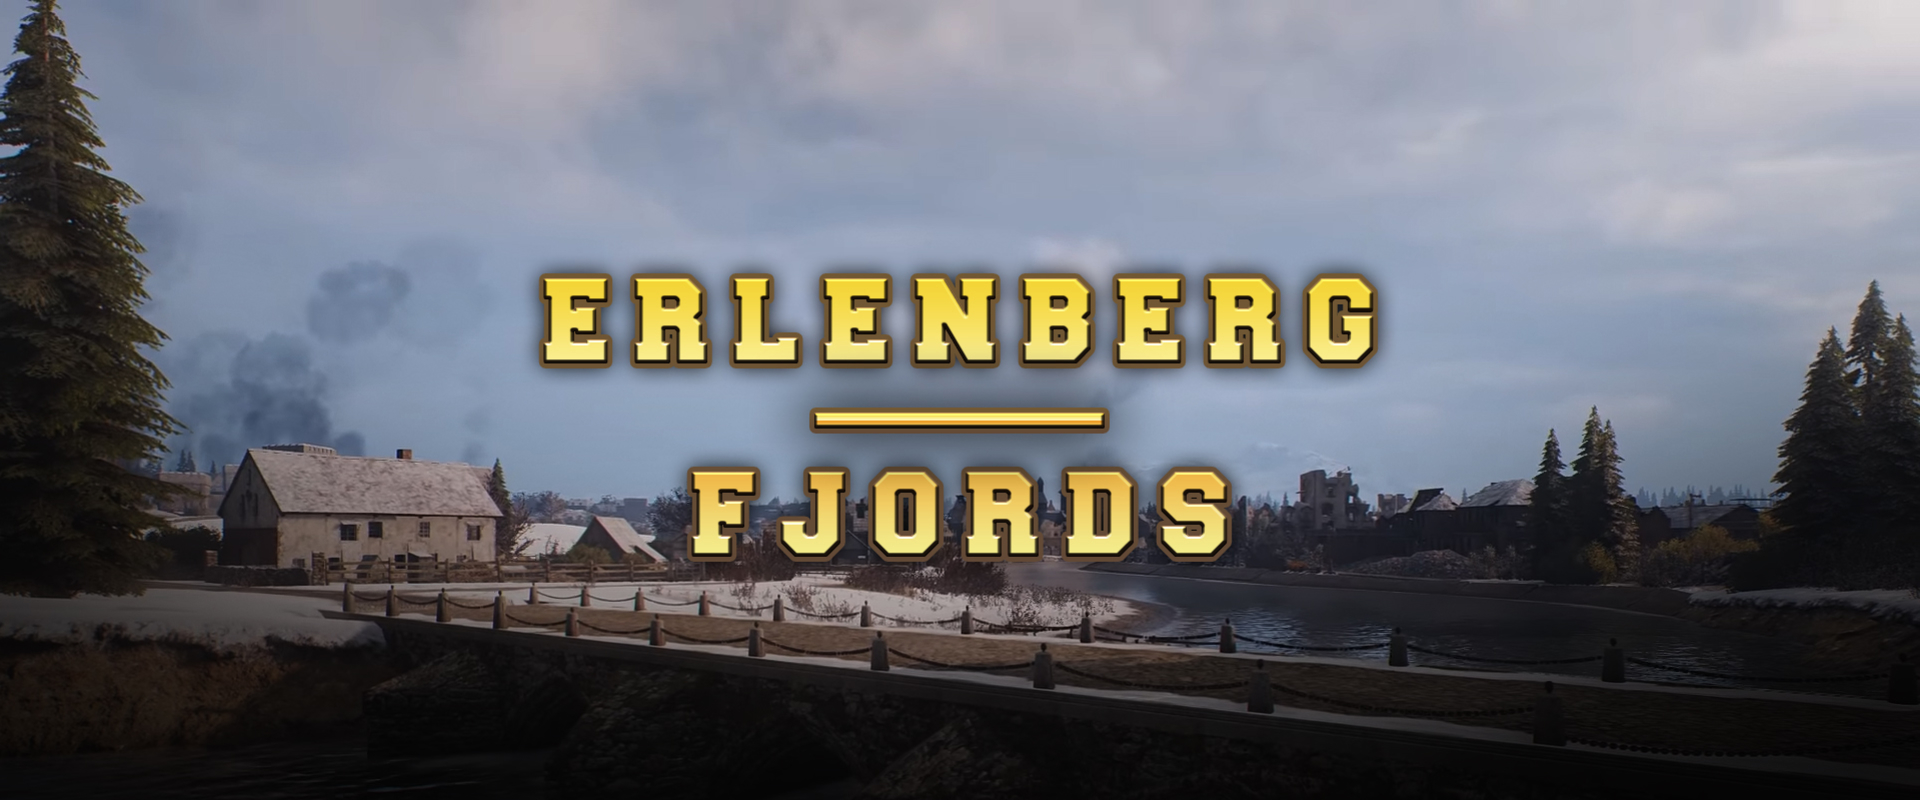 Még több HD térkép: Erlenberg és Fjords